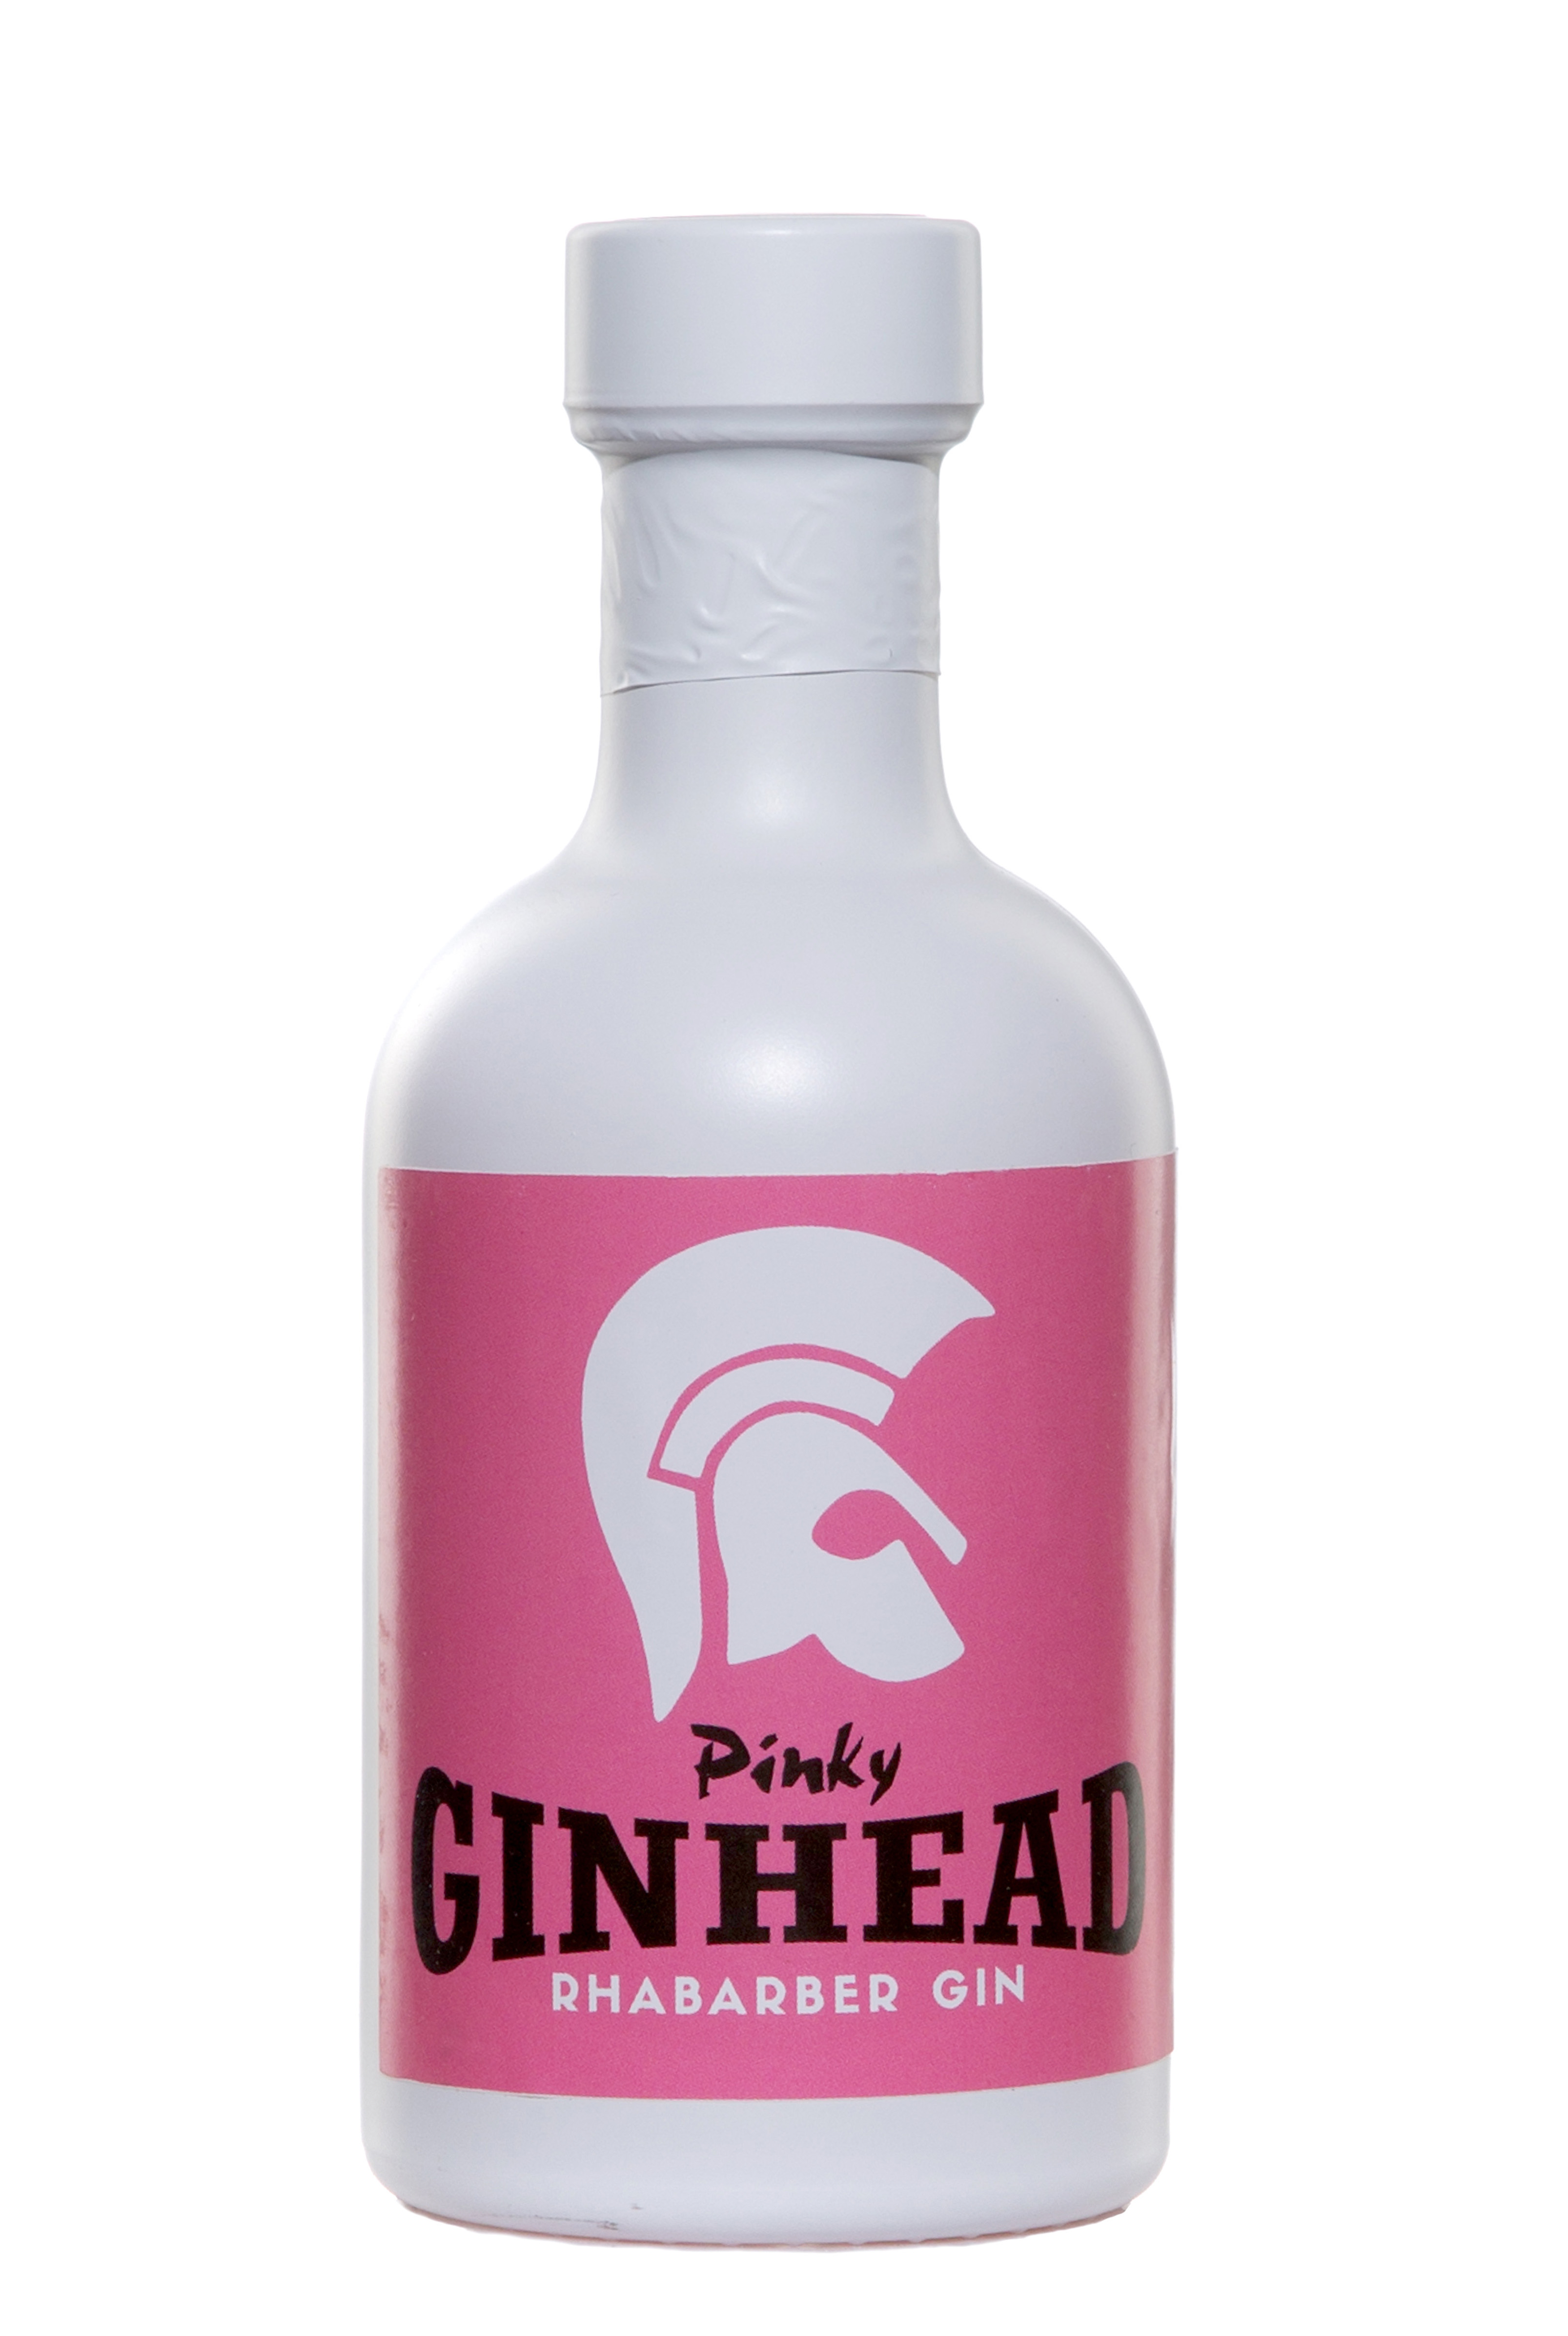 Ginhead "Pinky Gin"